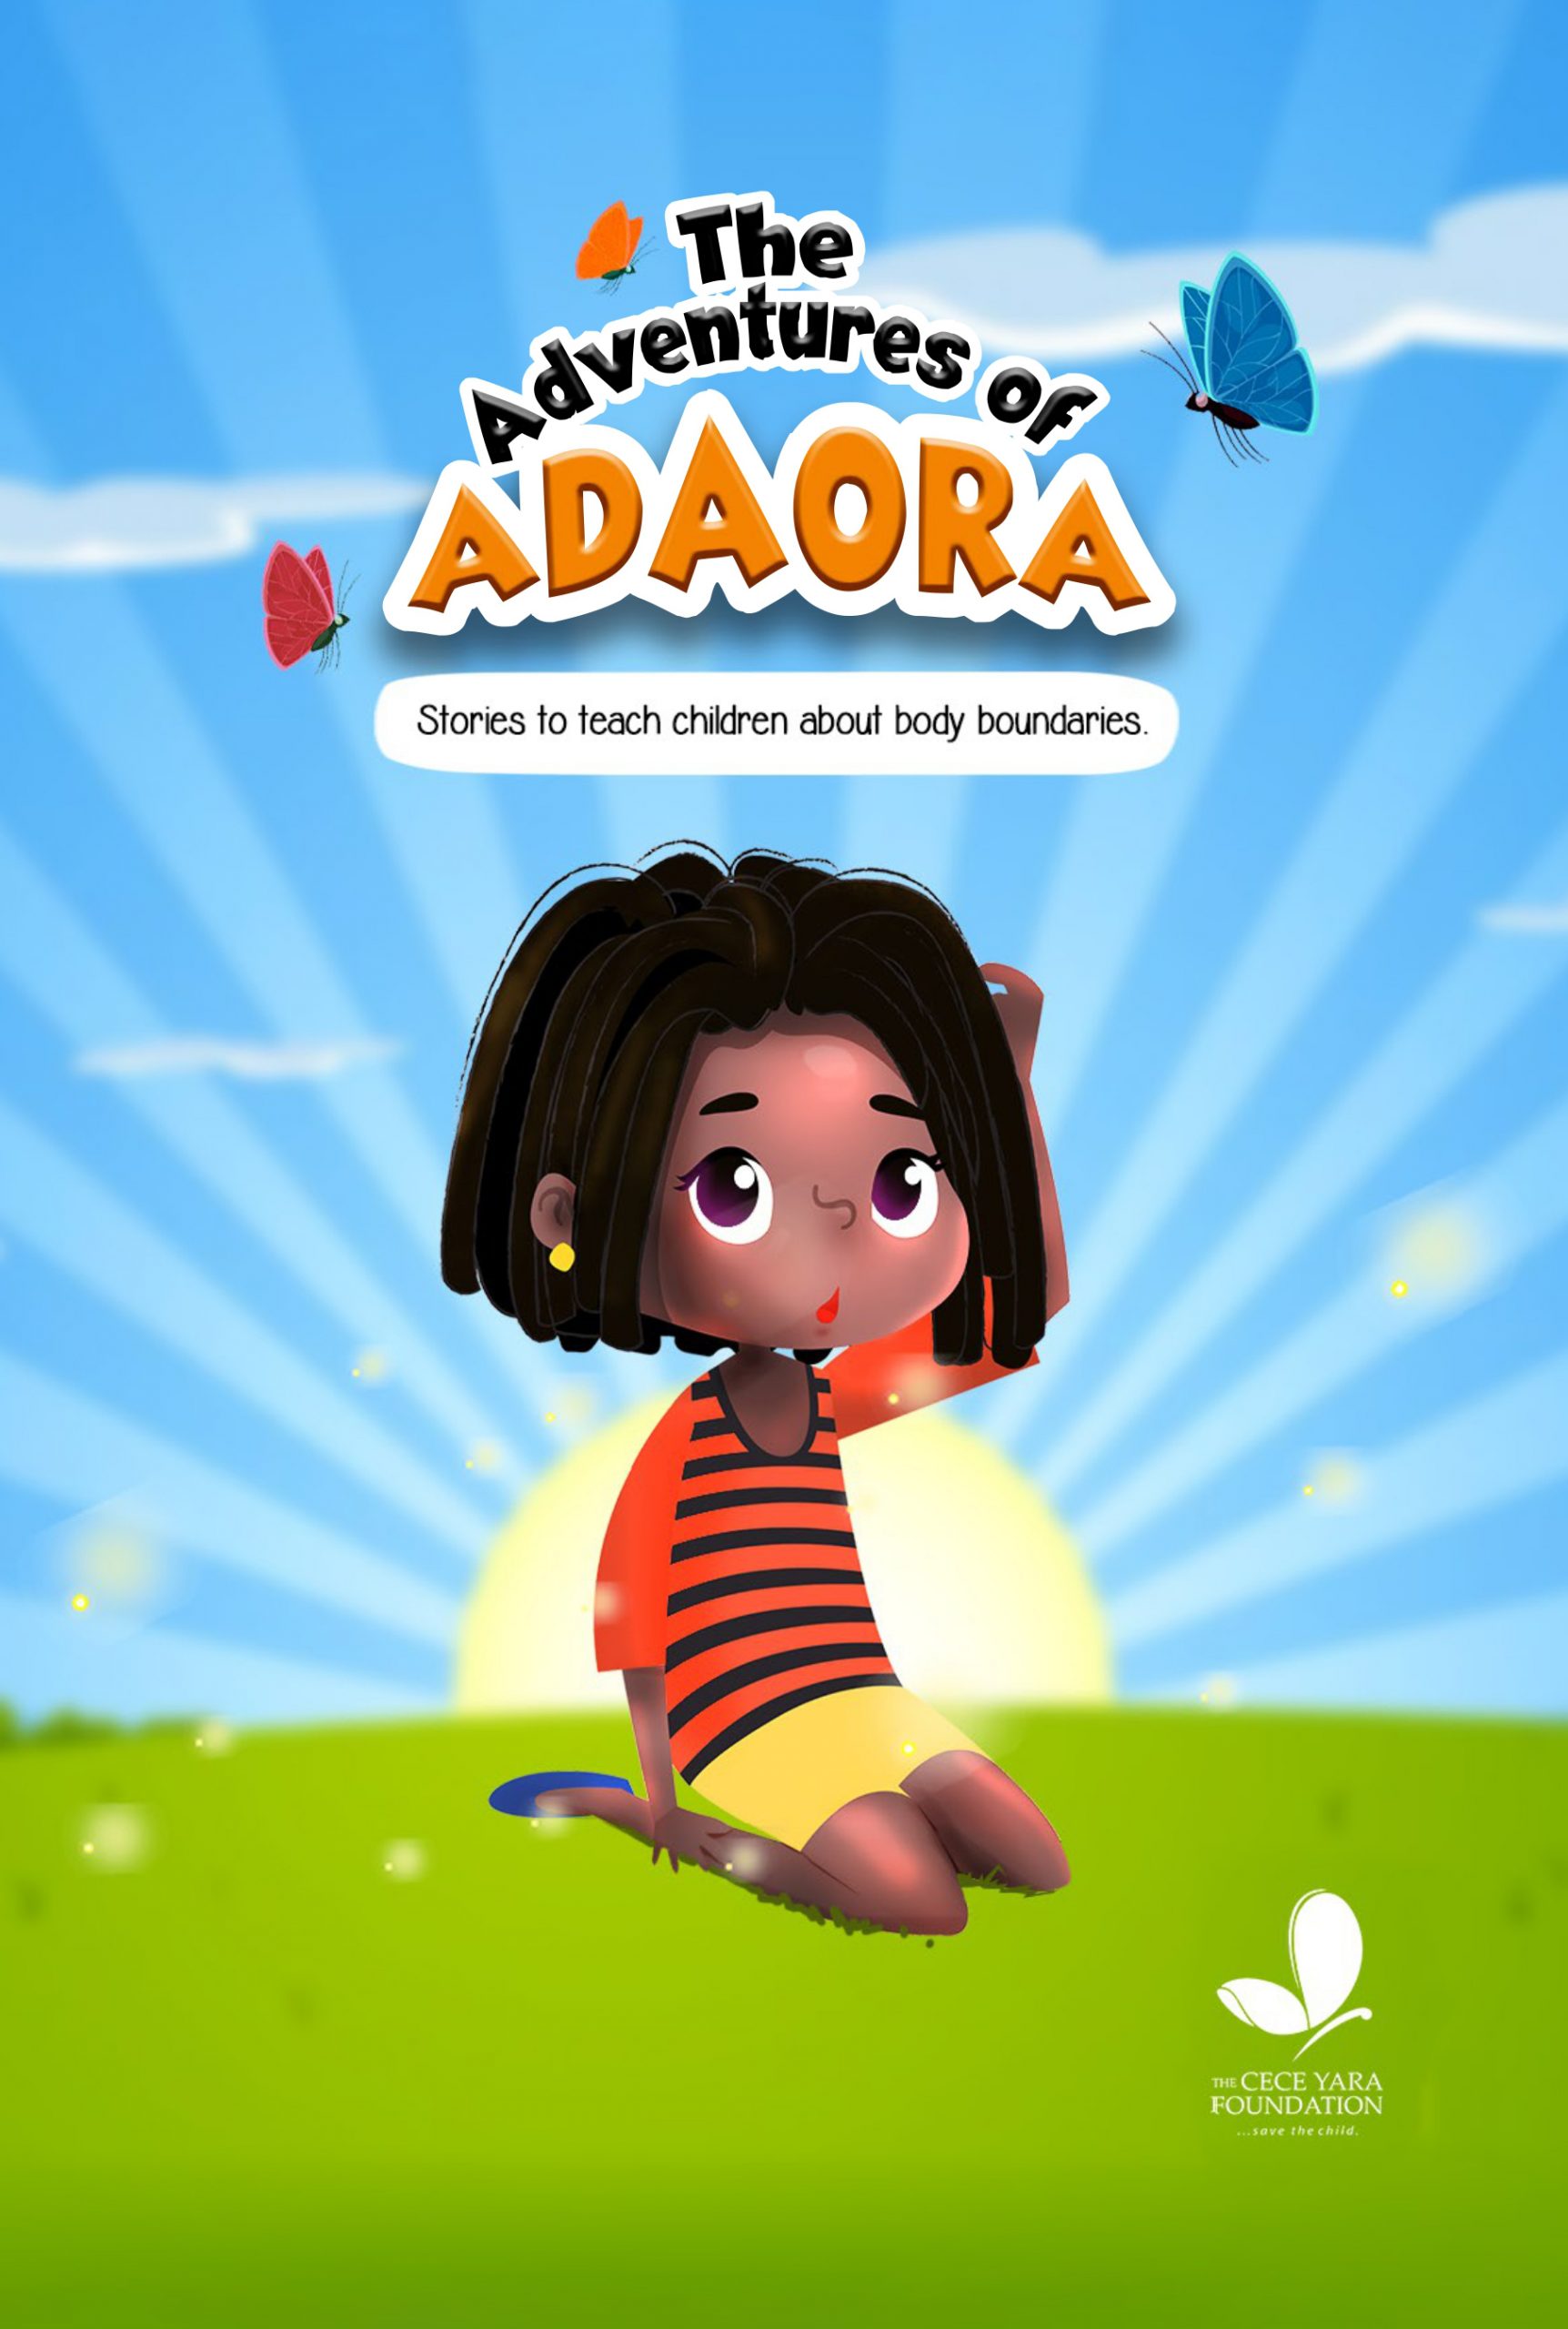 The Adventure of Adaora